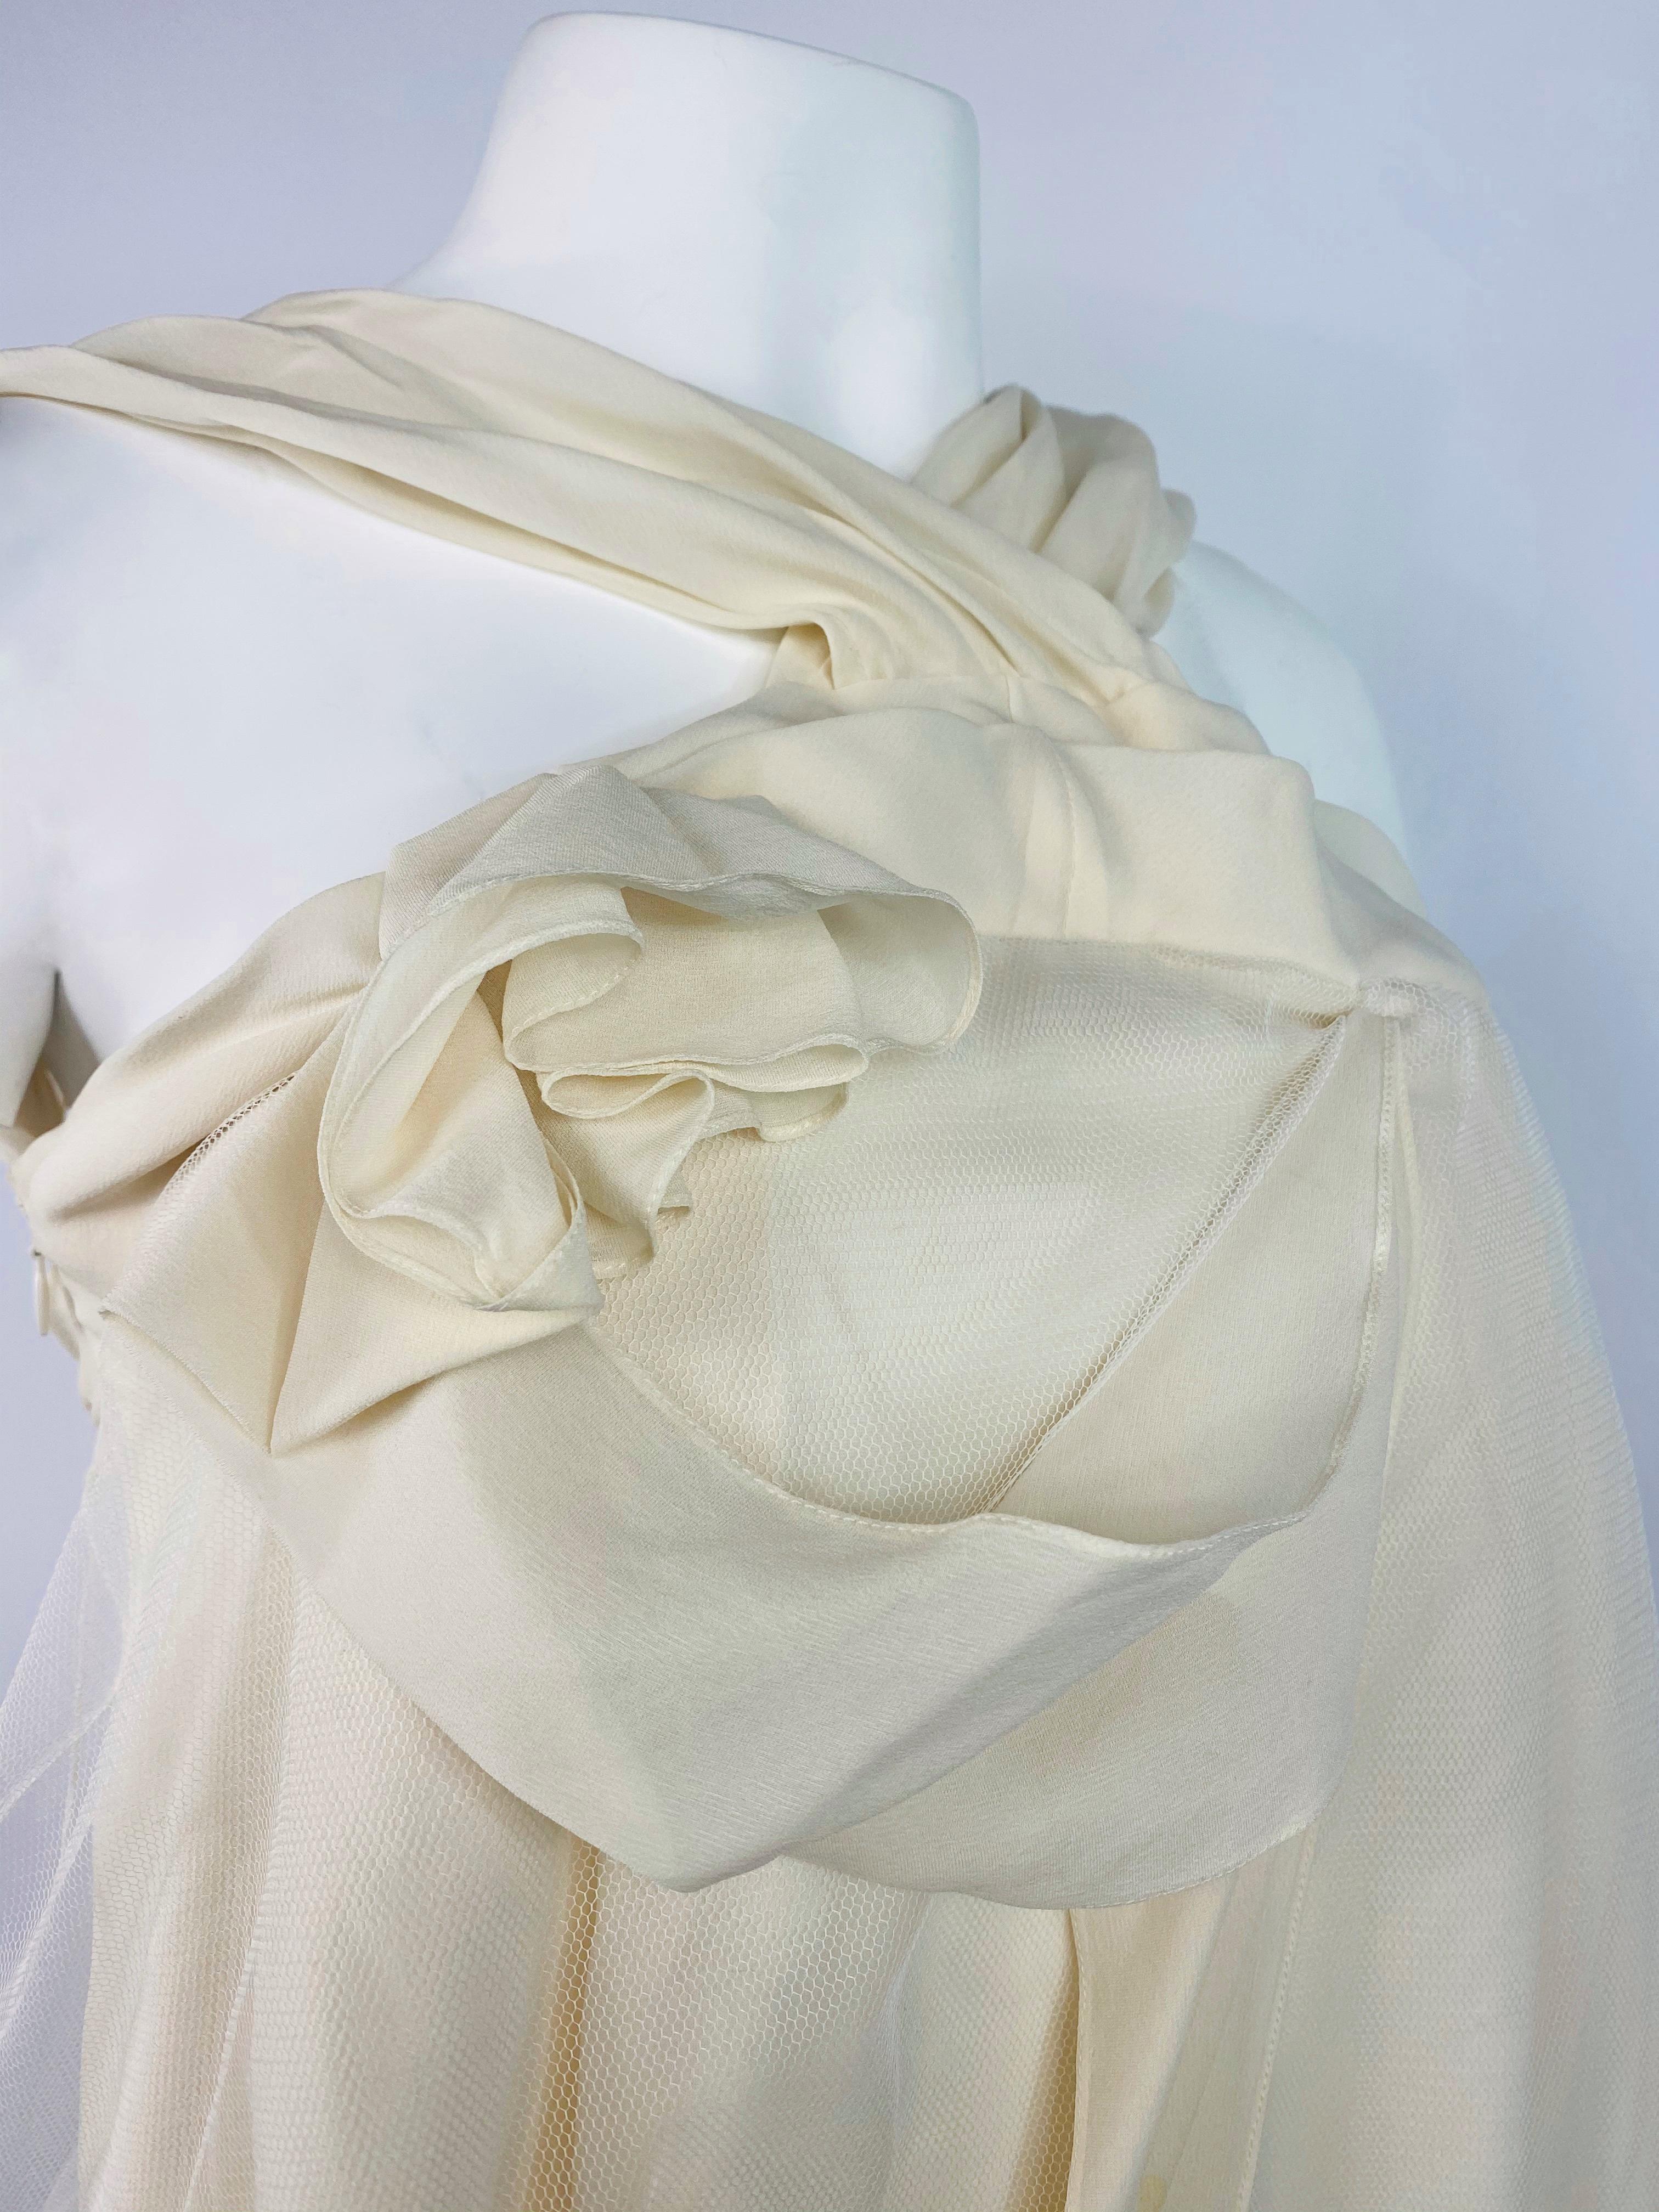 Christian Dior Boutique Paris White Silk Sleeveless Top Size 38 2